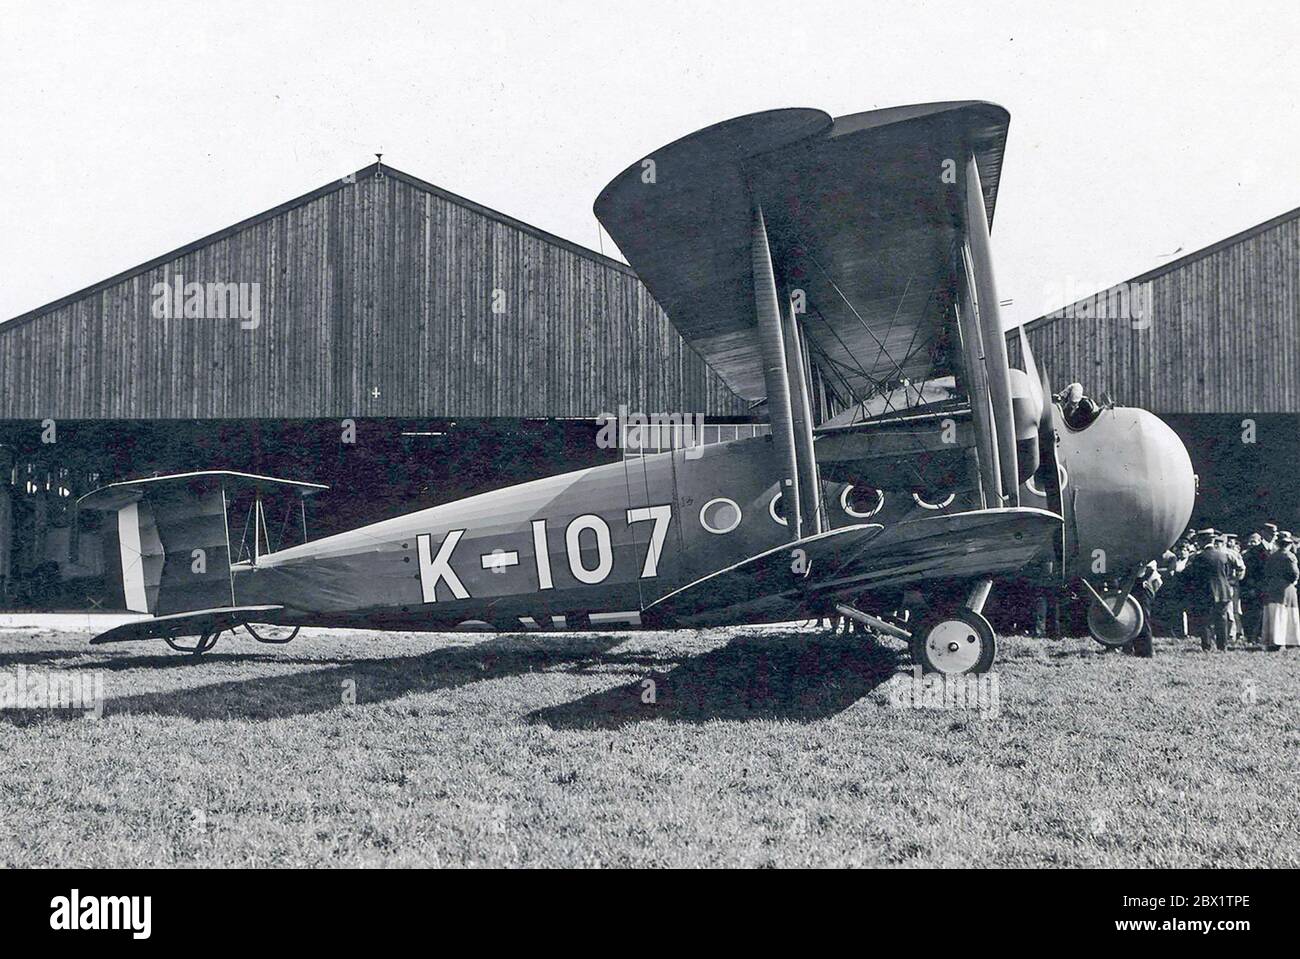 VICKERS VIMY FB-27 COMMERCIALE CIRCA 1919. Questo aeromobile - in seguito G-EAAV - è stato cancellato dopo un incidente a Tabora, Tanzania, il 27 febbraio 1920. Foto Stock